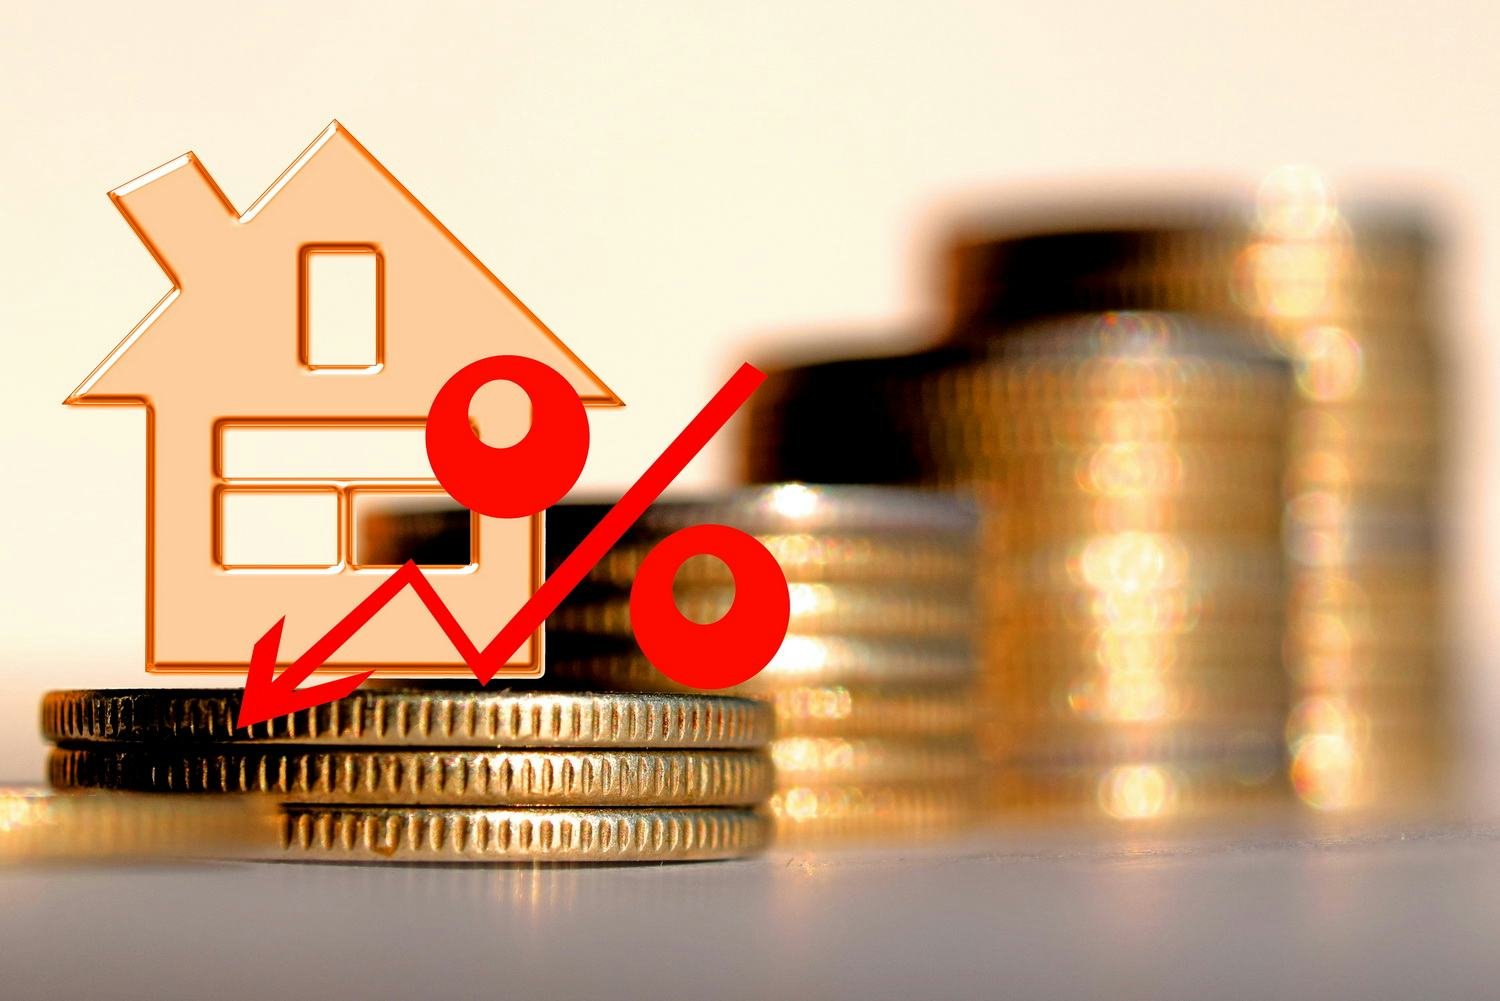 Acht op tien geldgevers verlagen hypotheekrente weer